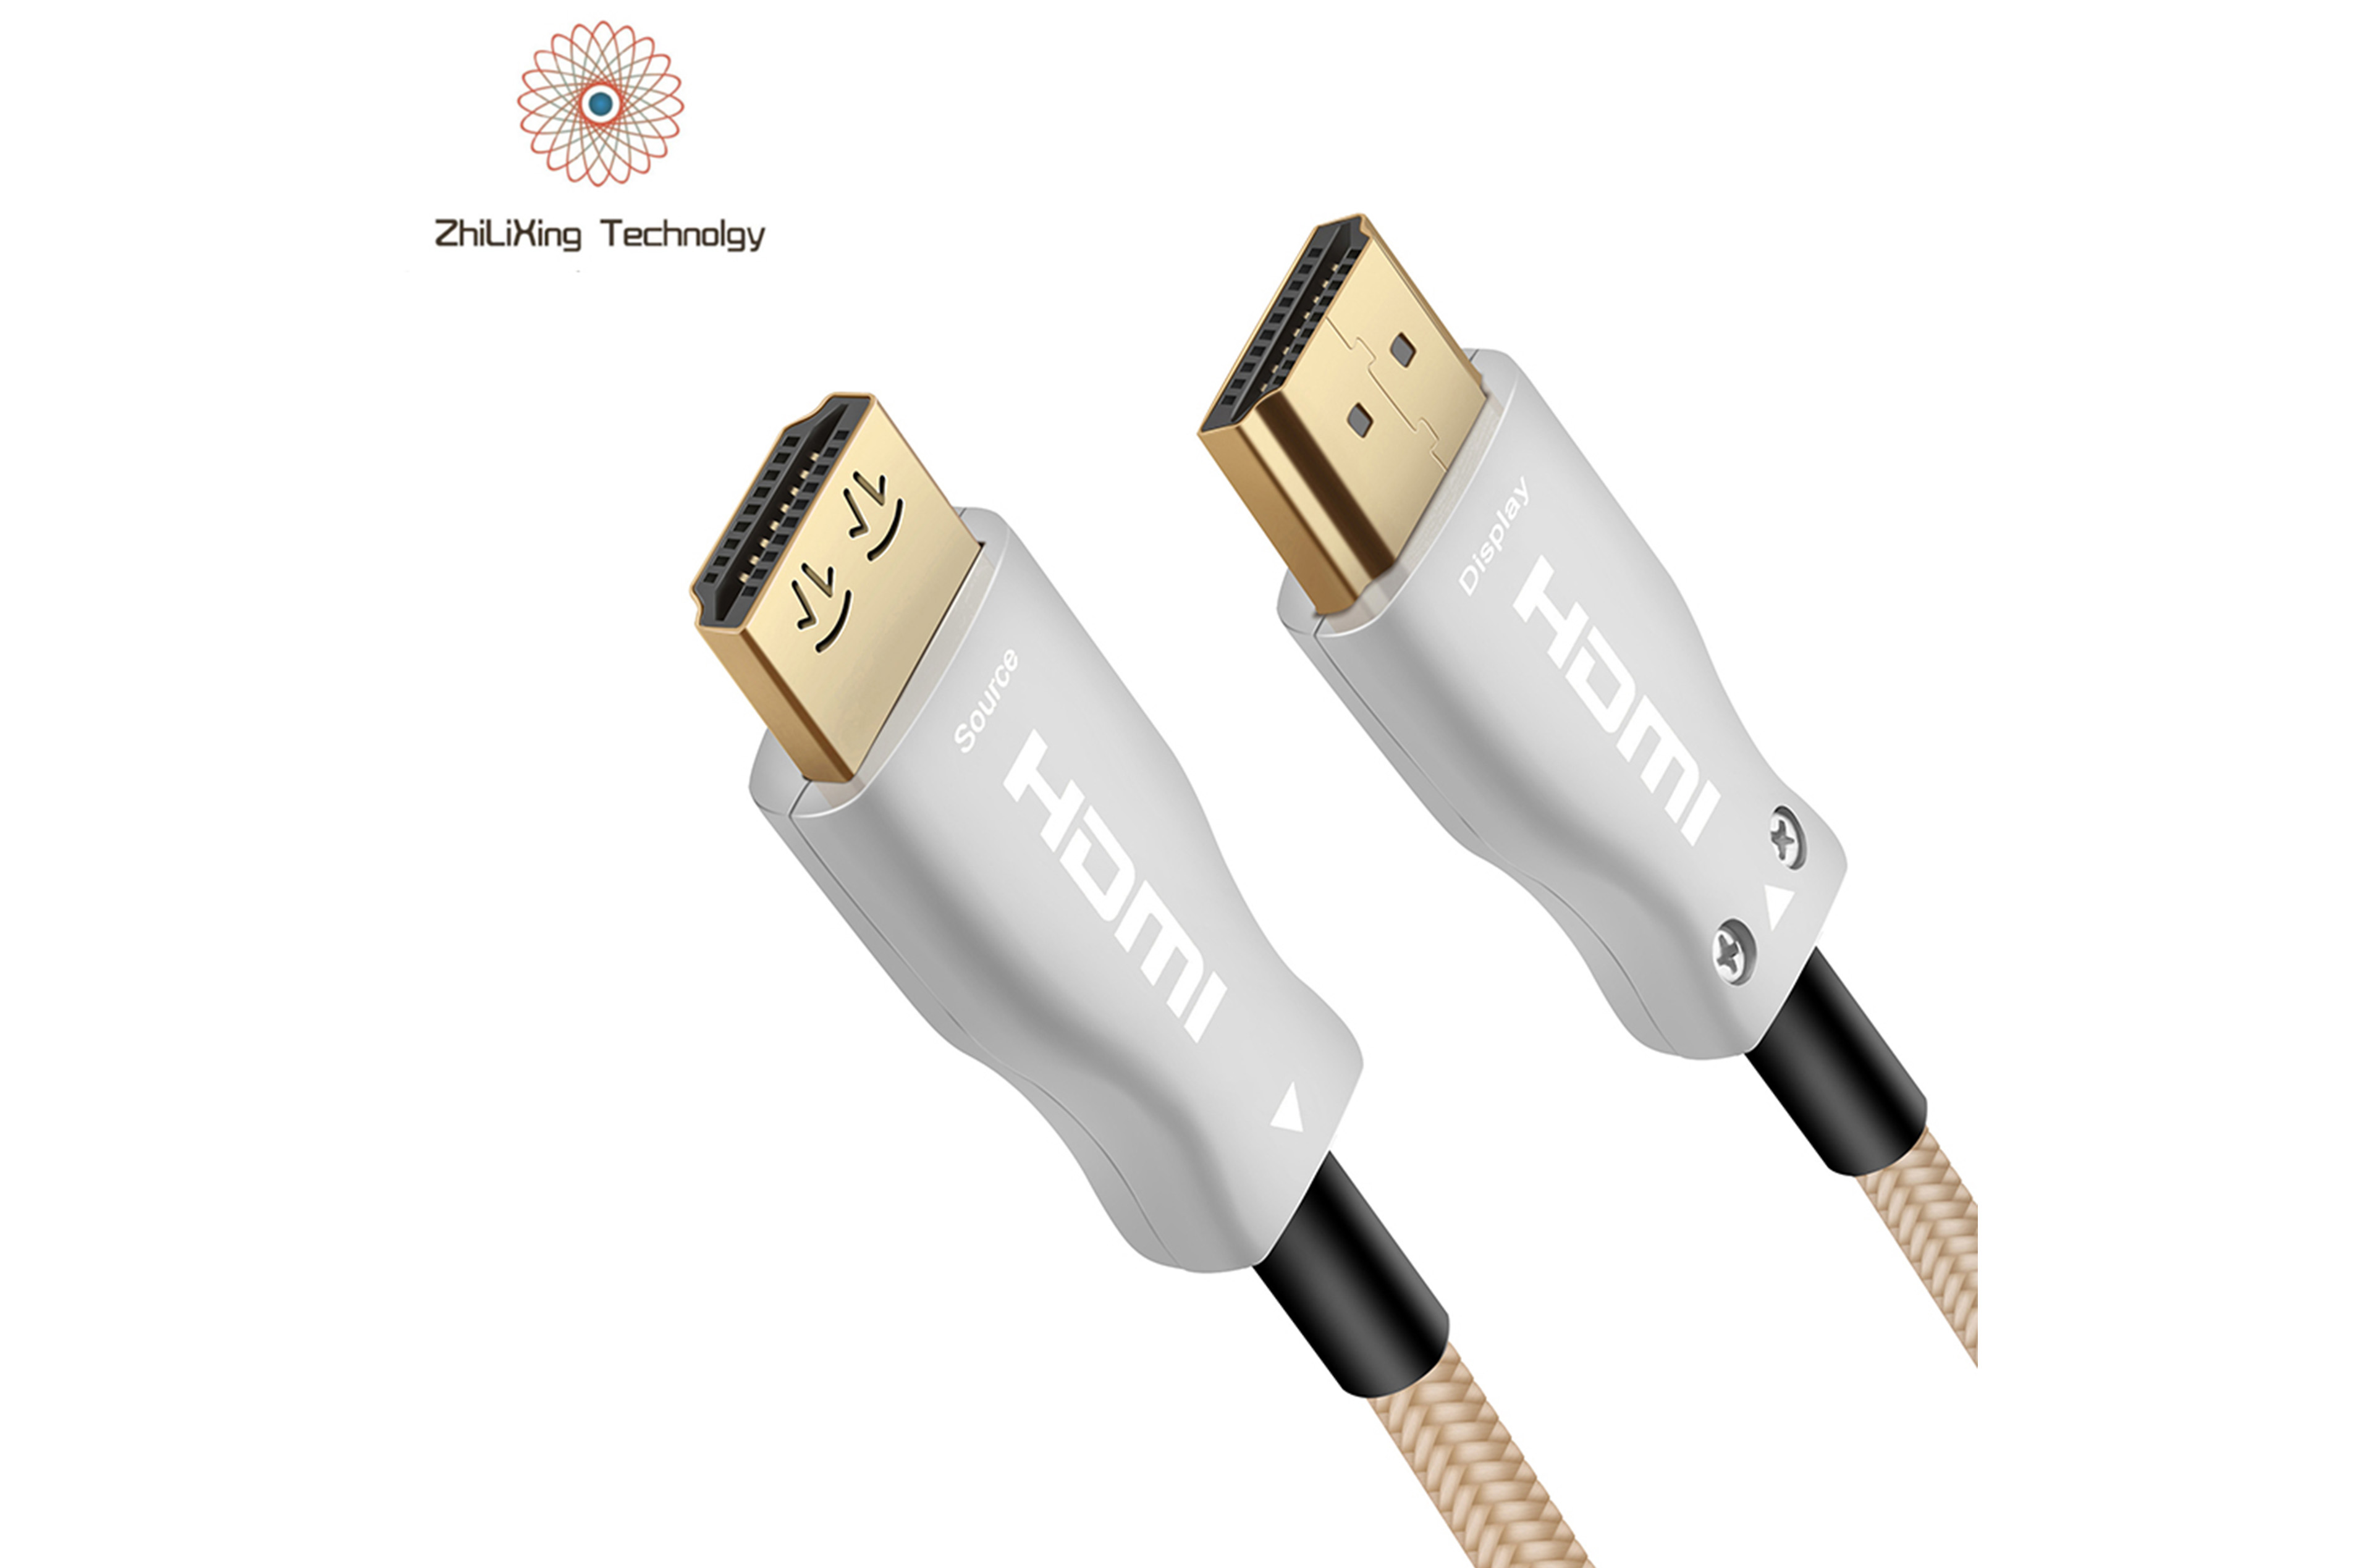 HDMI fiber optic cable-19015